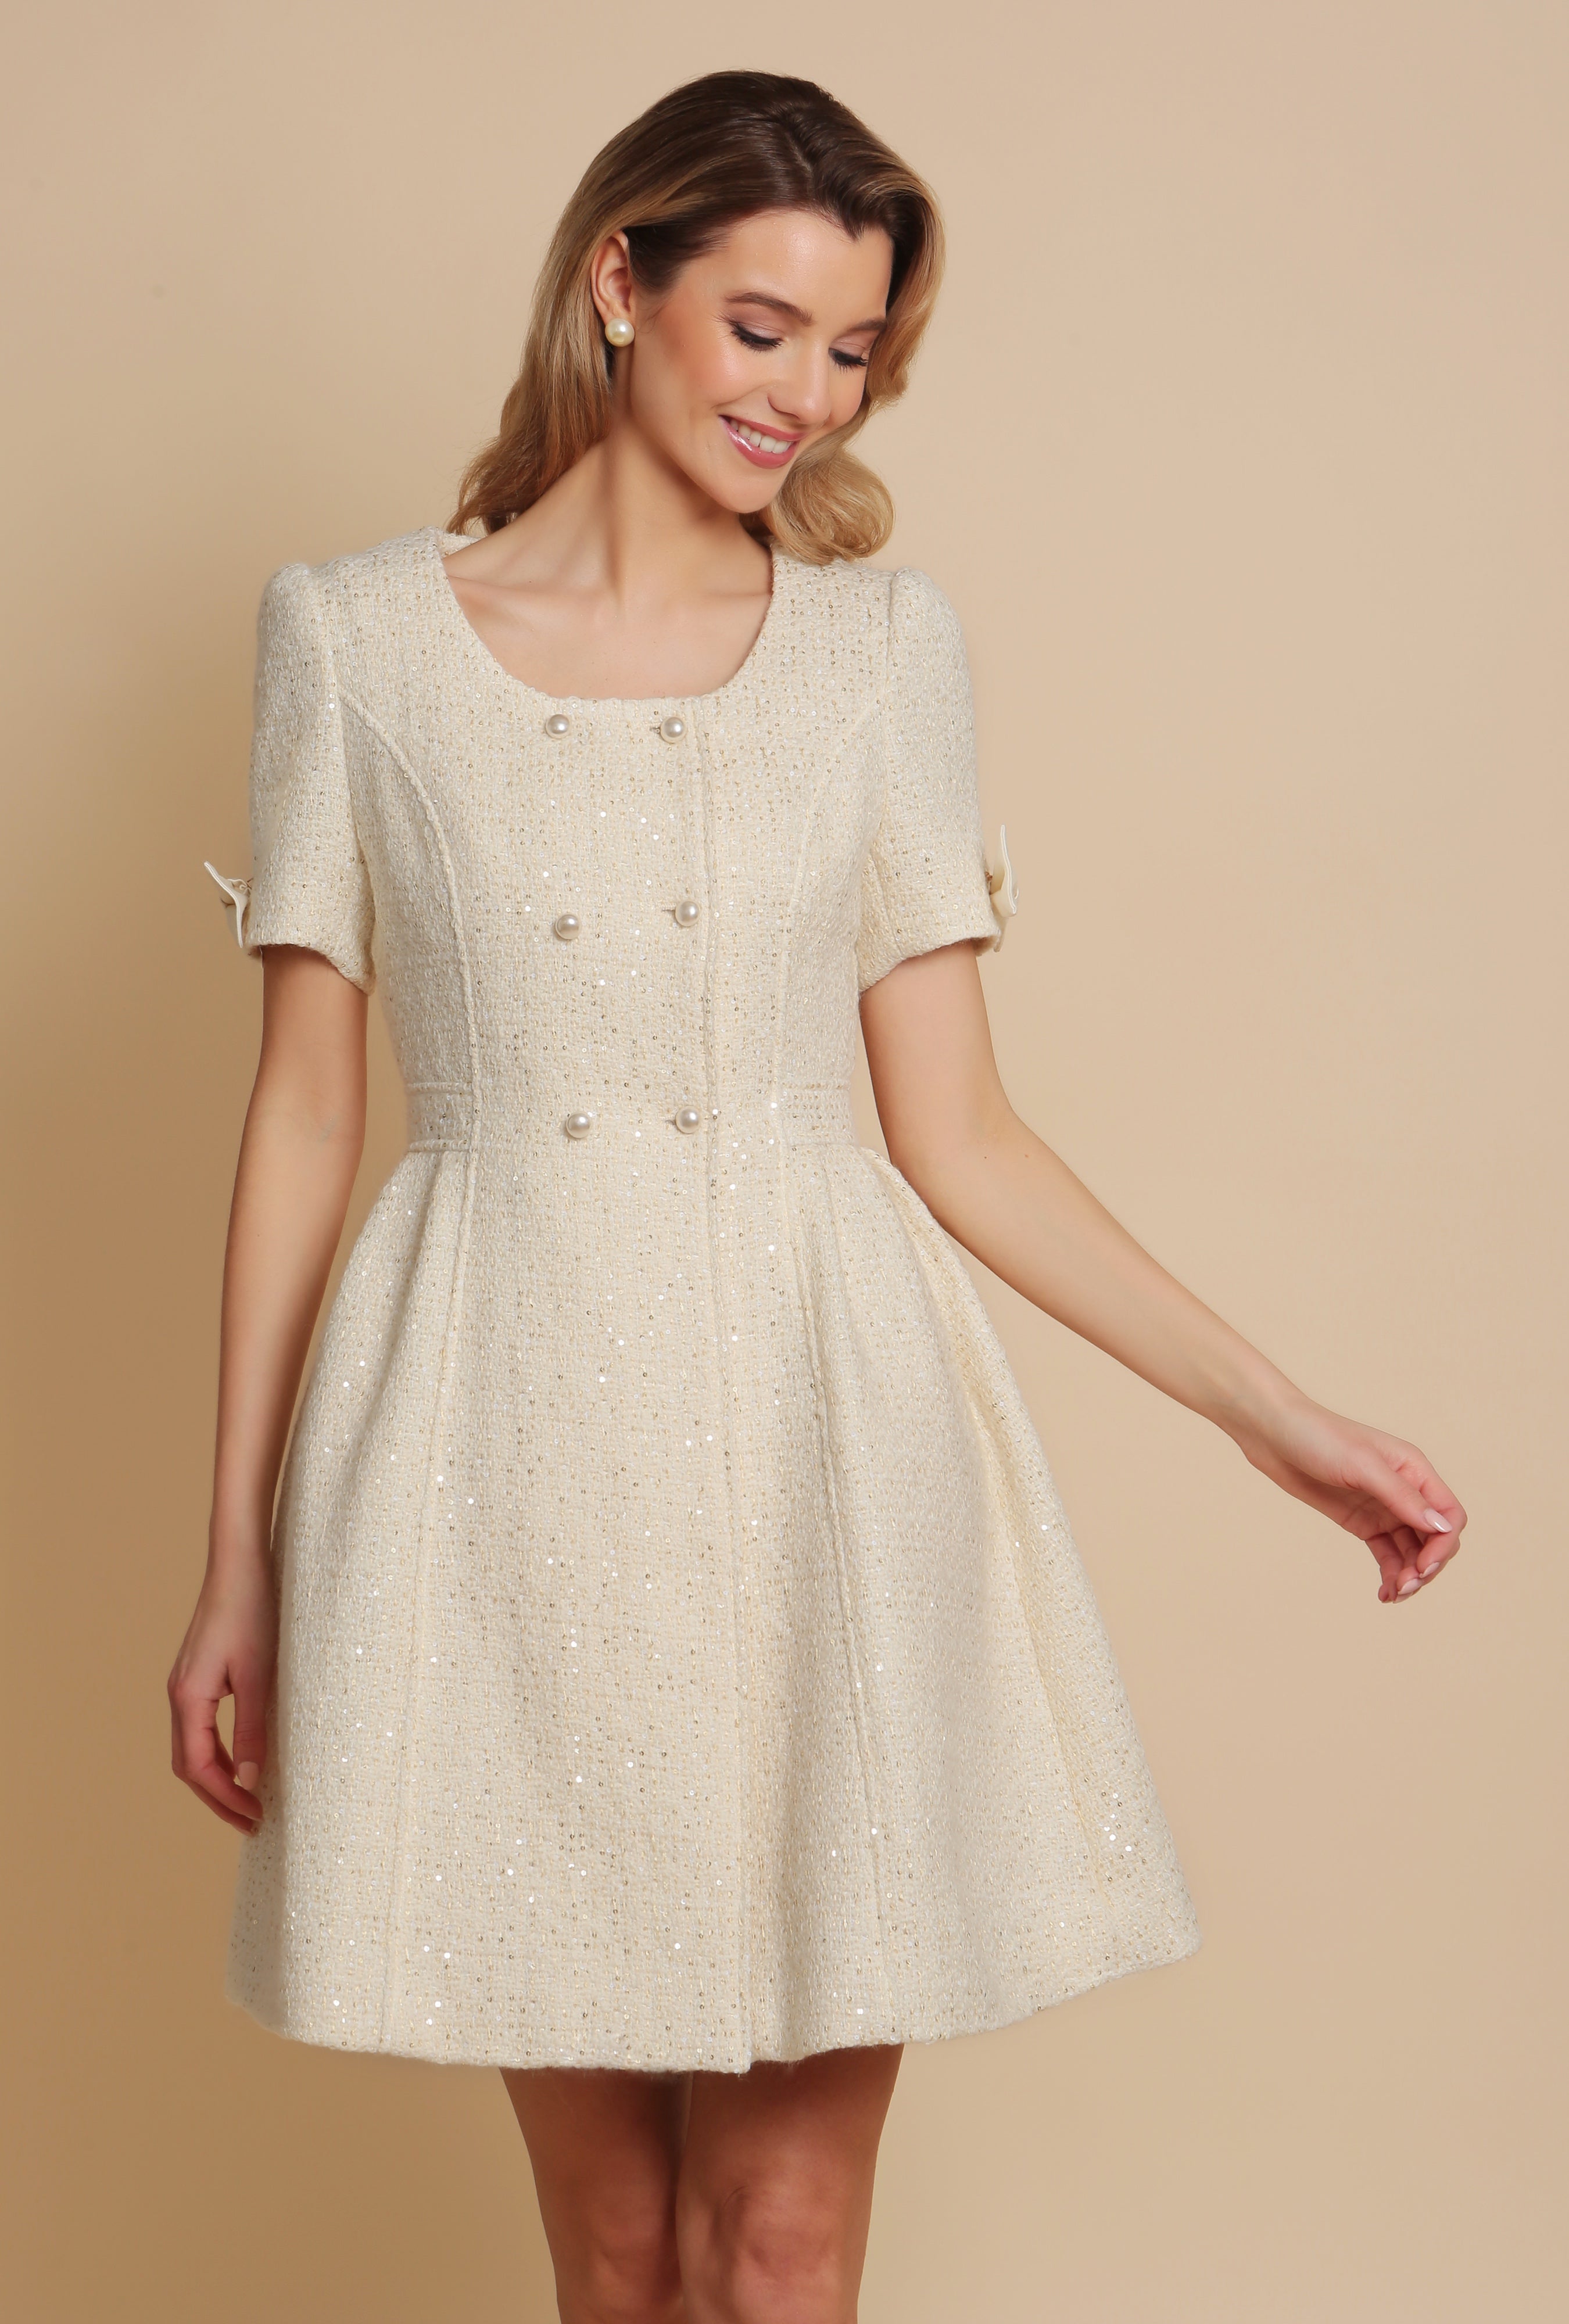 'Golden Age' Wool Tweed Dress Coat in Bianco